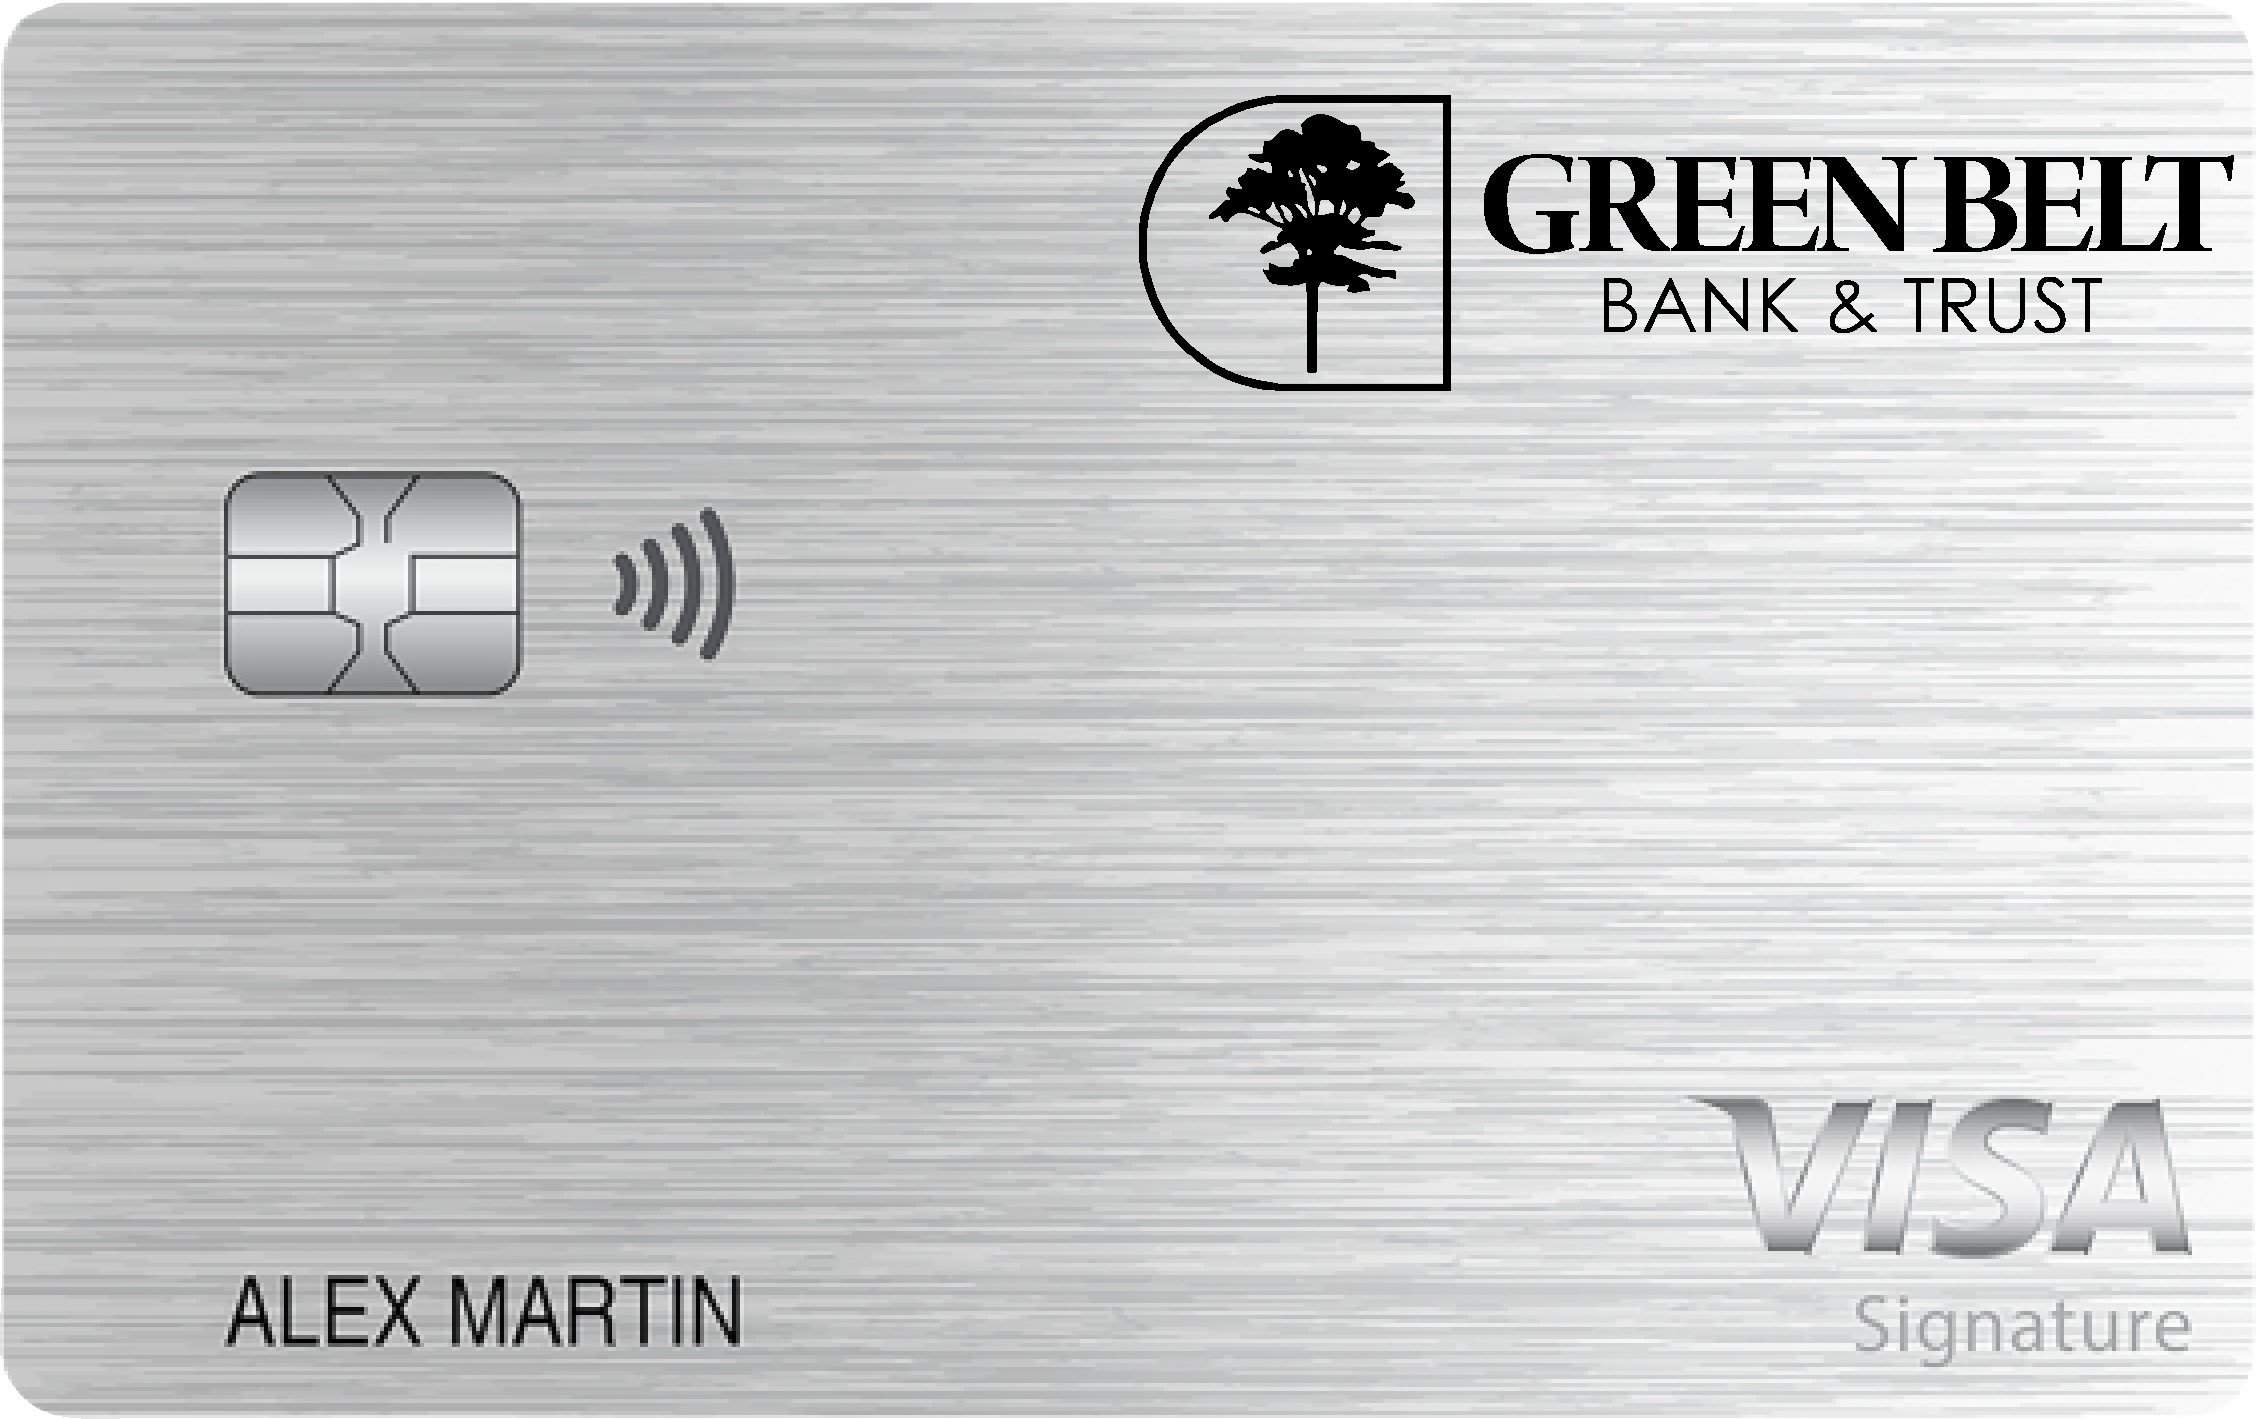 Green Belt Bank & Trust